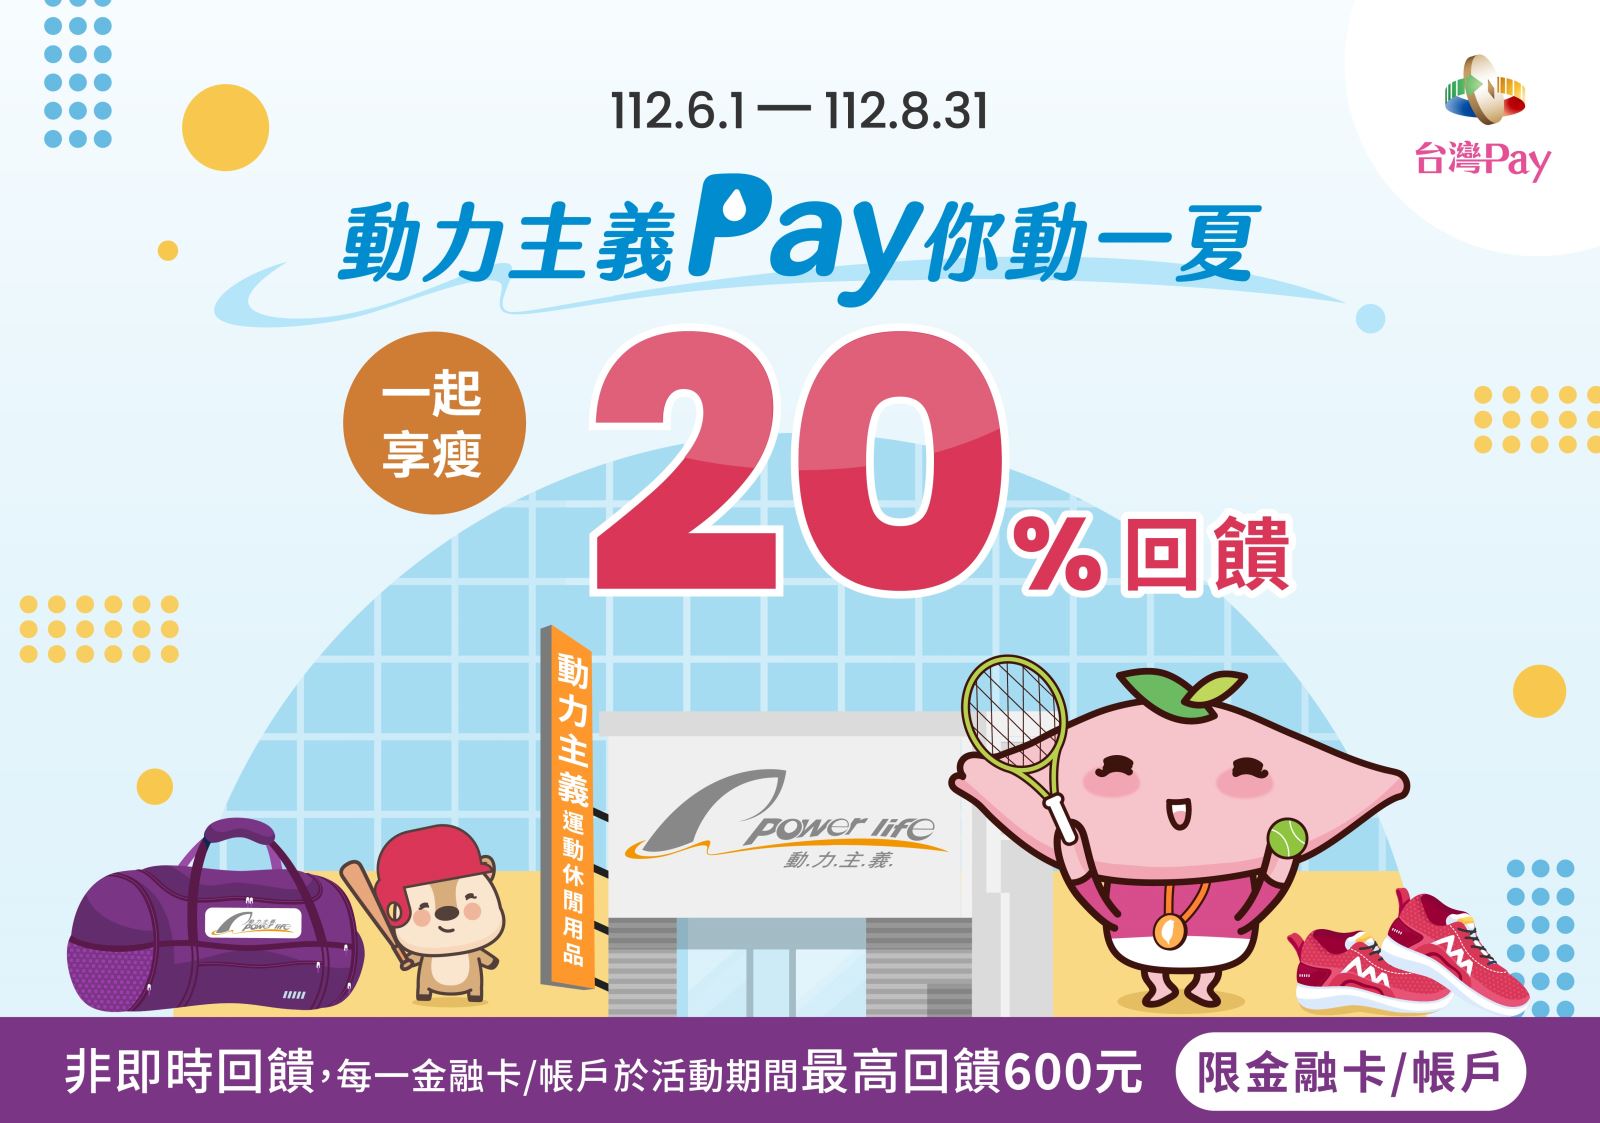 以「台灣Pay」QR Code掃碼支付，單筆消費不限金額可享20%現金回饋，每一金融卡號/帳戶於活動期間最高回饋新臺幣600元為限